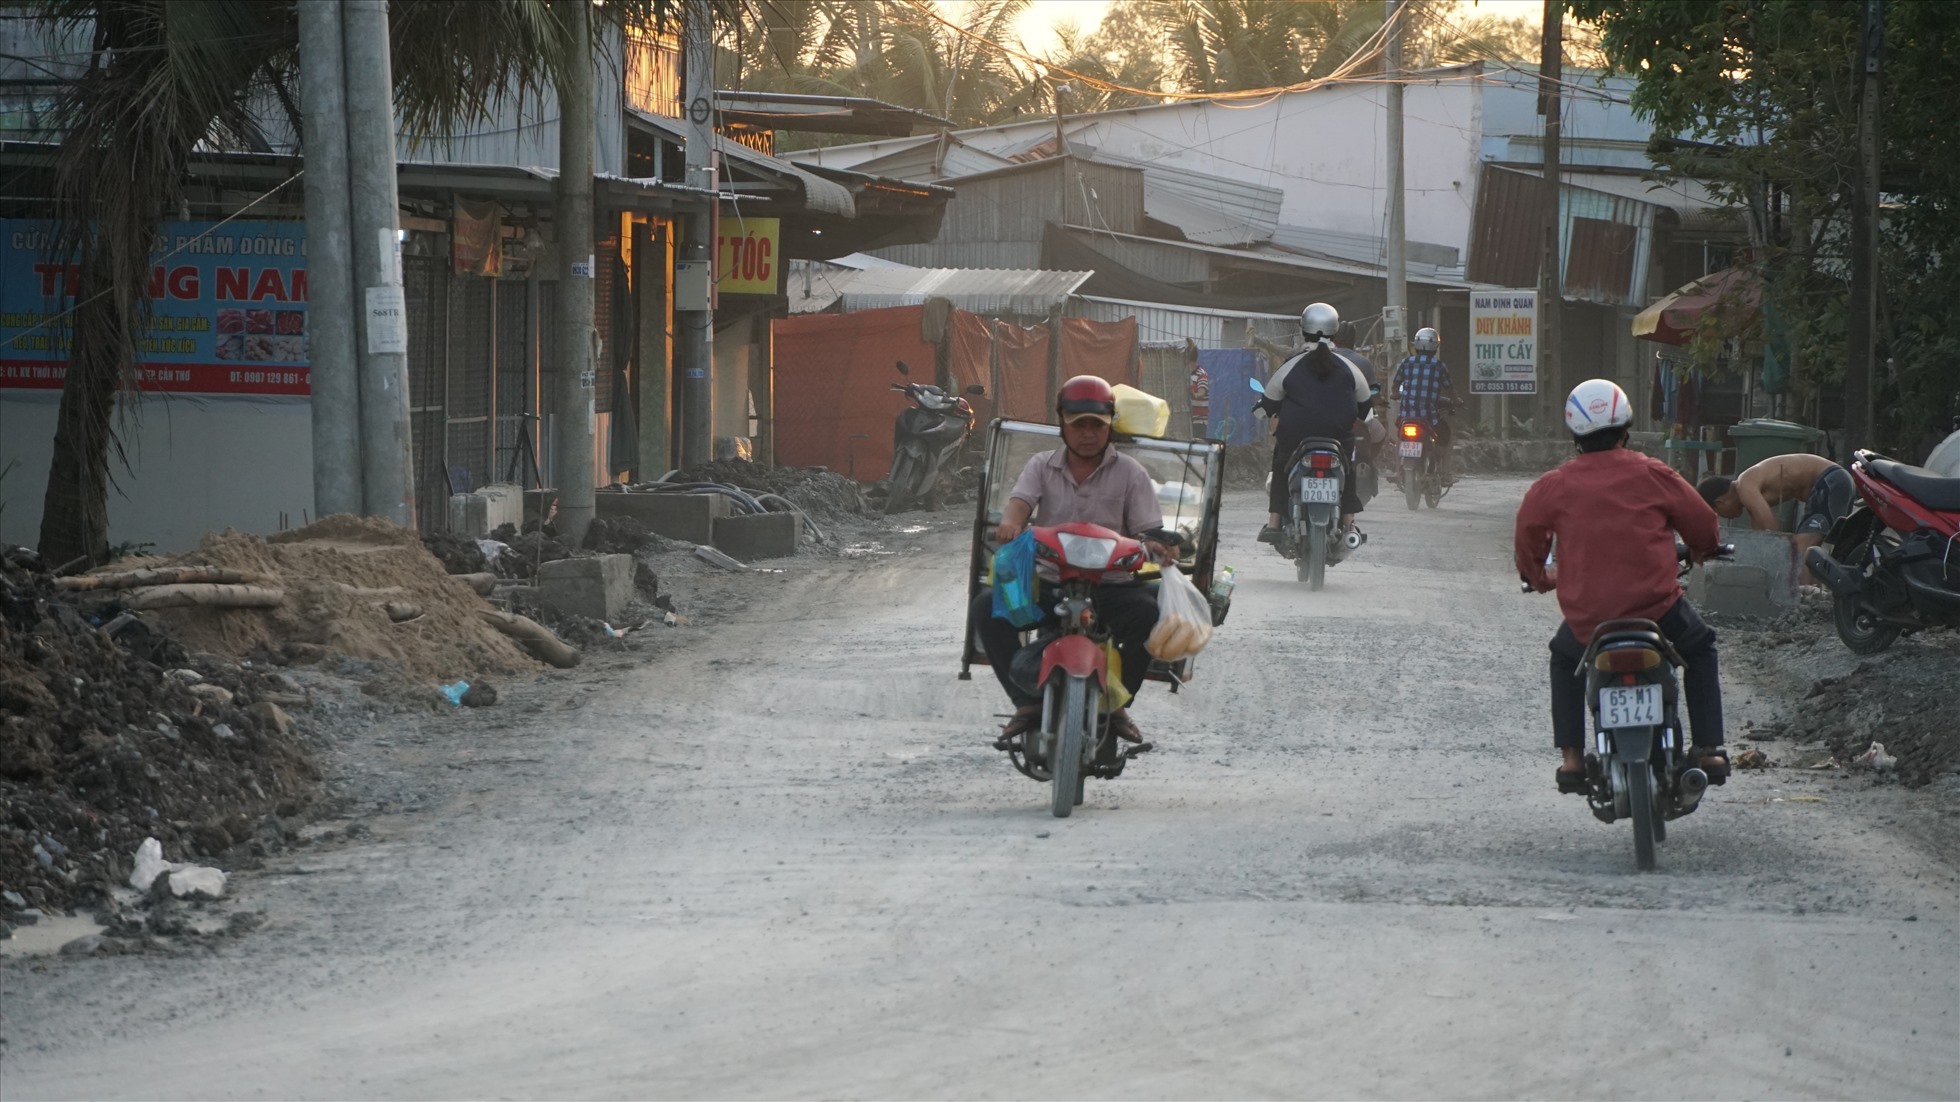 Ông Nguyễn Bé Bảy (54 tuổi) thường xuyên chở trái cây trên con đường này chia sẻ, đường được nâng cấp thì dân đi lại dễ dàng, nhưng bên cạnh đó cần có những giải pháp để khắc phục những tồn tại.